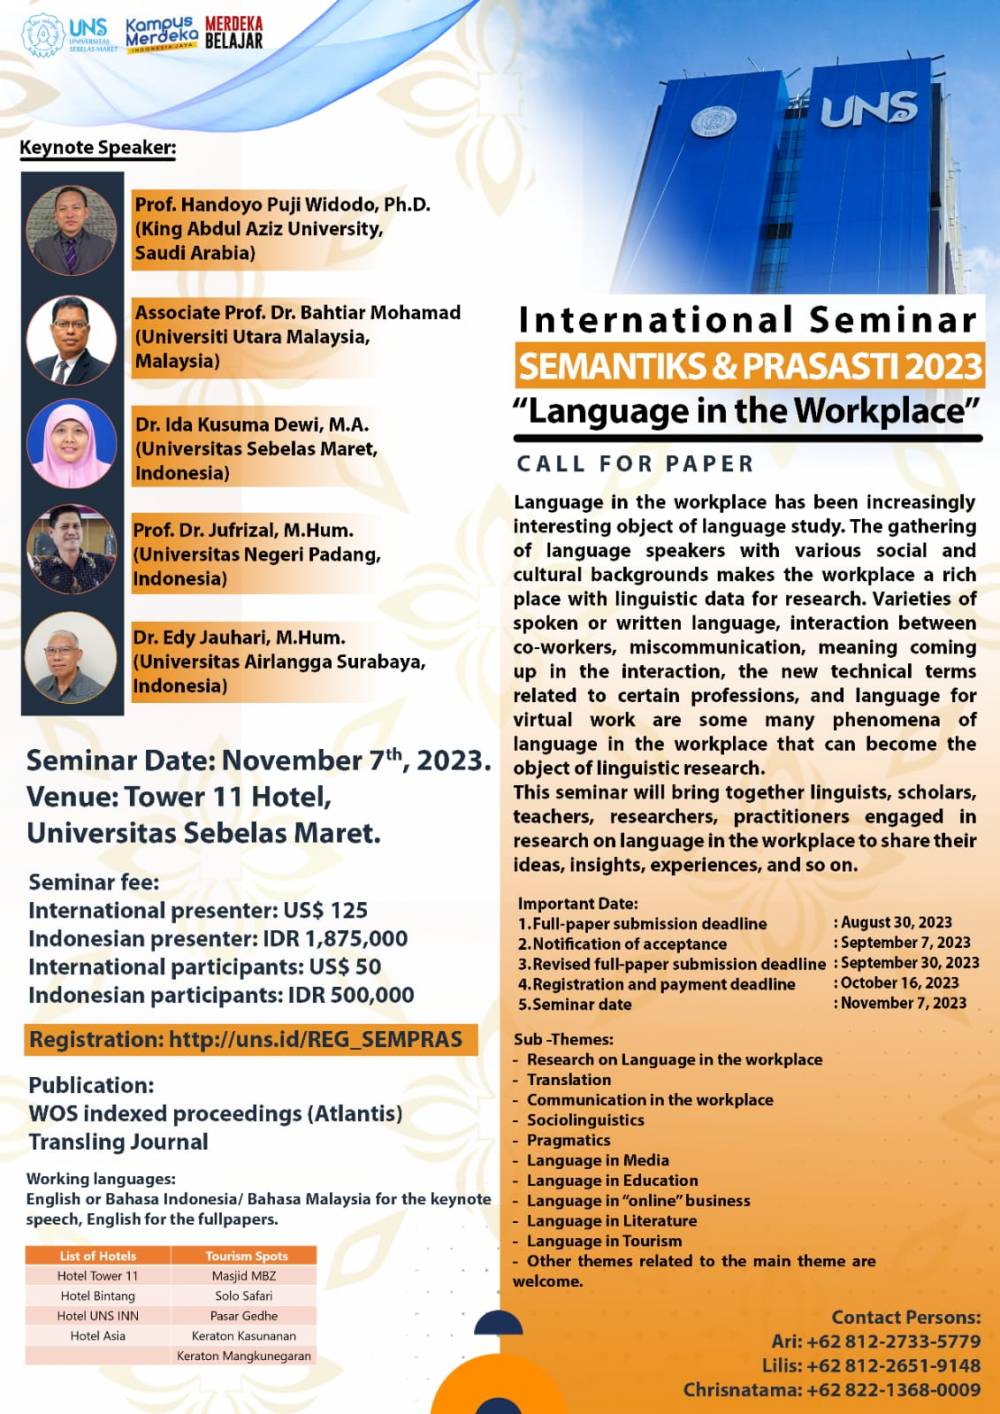 International Seminar SEMANTIKS & PRASASTI 2023 Theme: Language in the Workplace